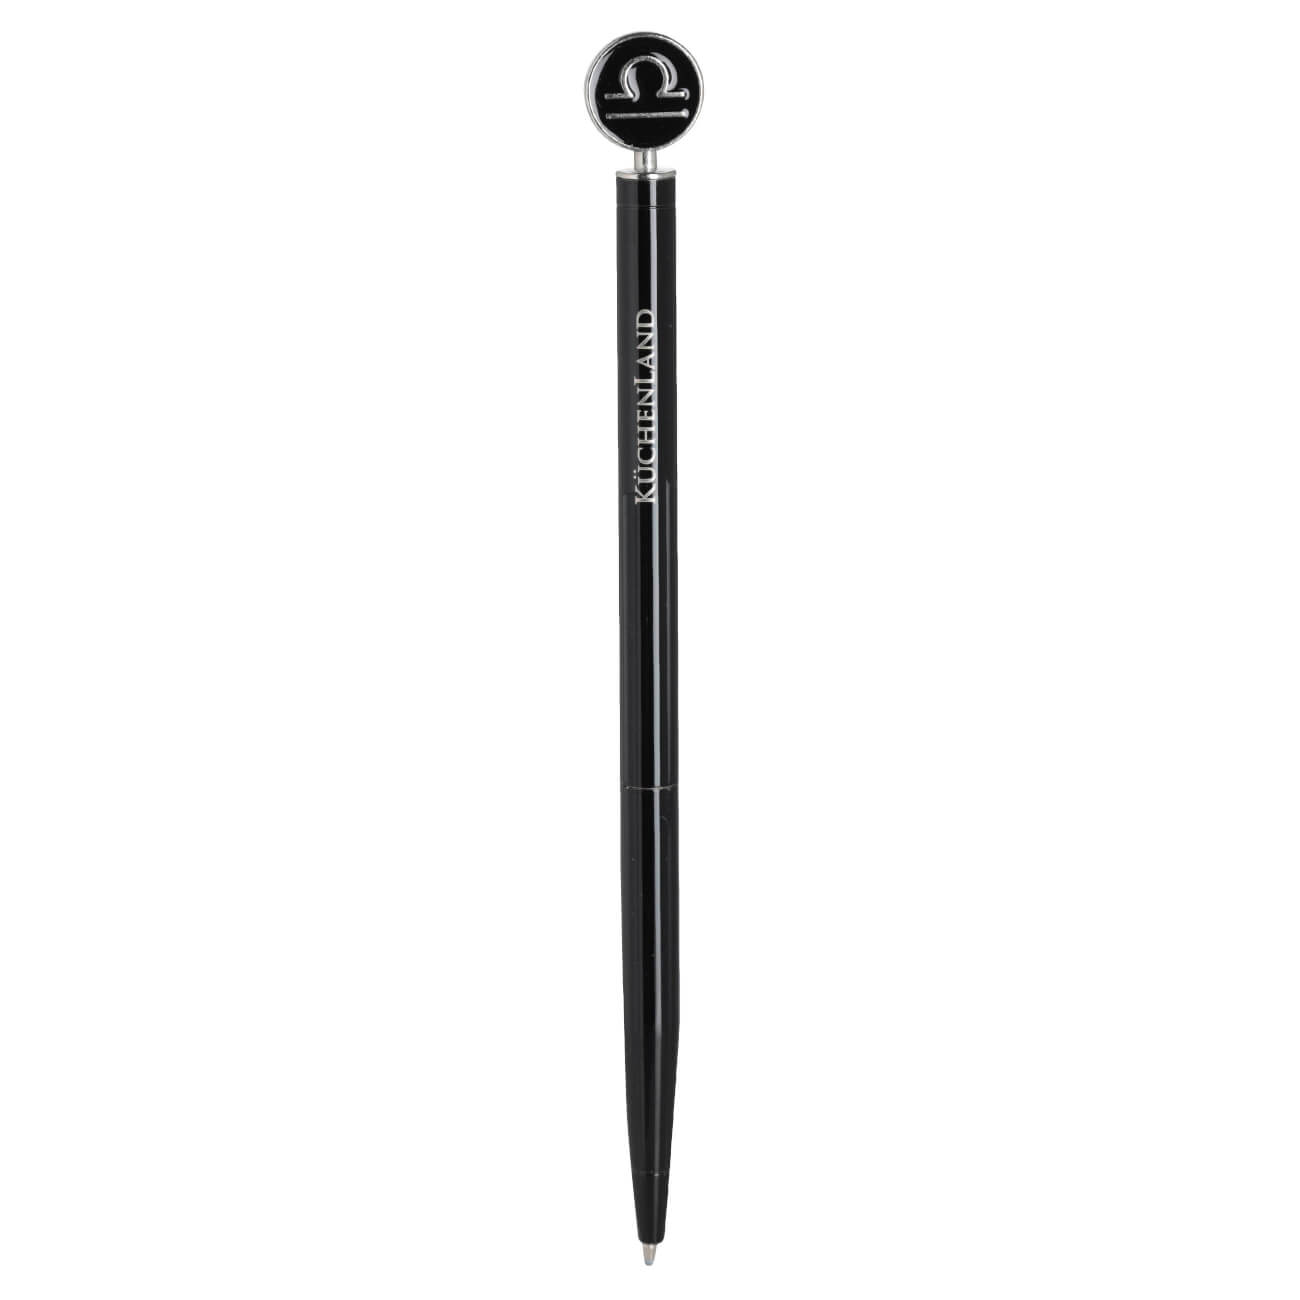 Ручка шариковая, 15 см, с фигуркой, сталь, черно-серебристая, Весы, Zodiac ручка с шейкером